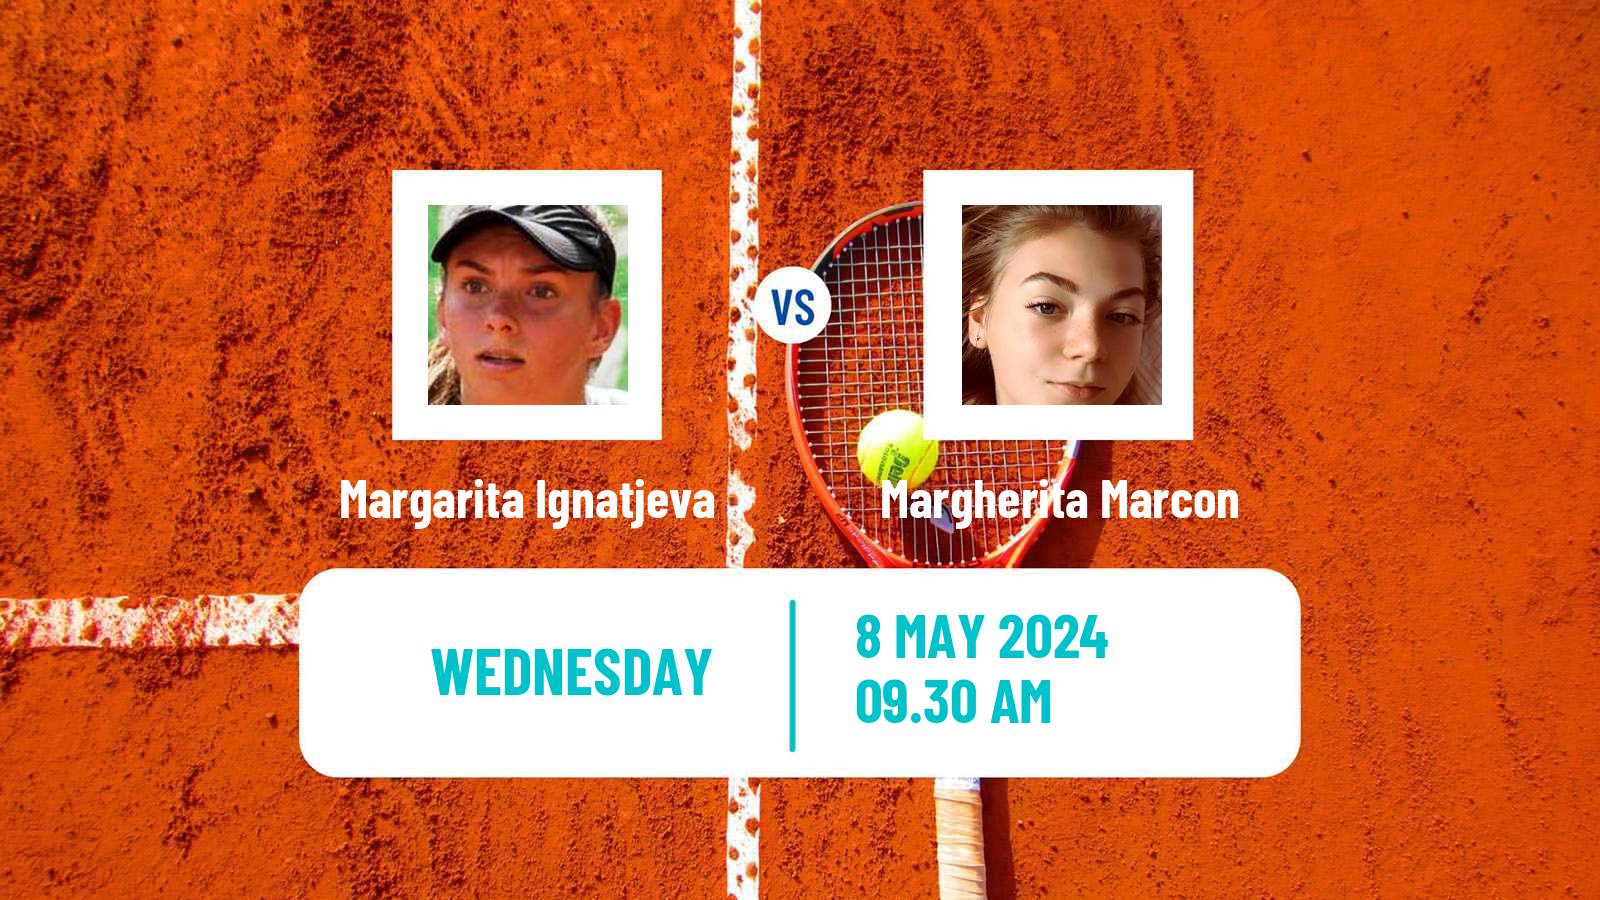 Tennis ITF W15 Nova Gorica Women Margarita Ignatjeva - Margherita Marcon